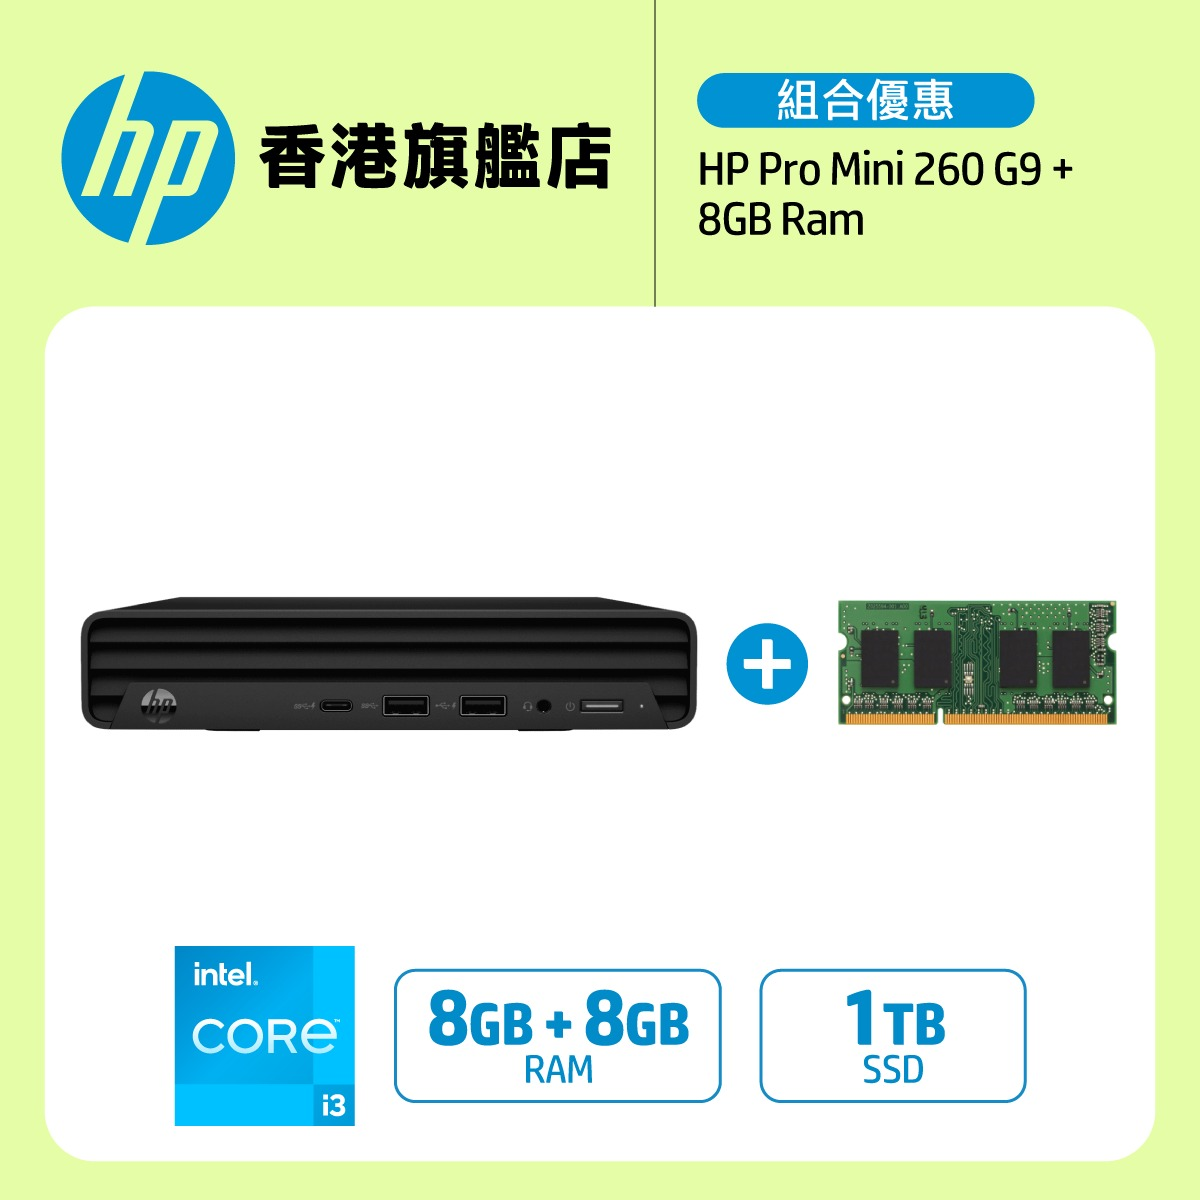 HP Pro Mini 260 G9 (i3) 桌上型電腦 + 8GB Ram